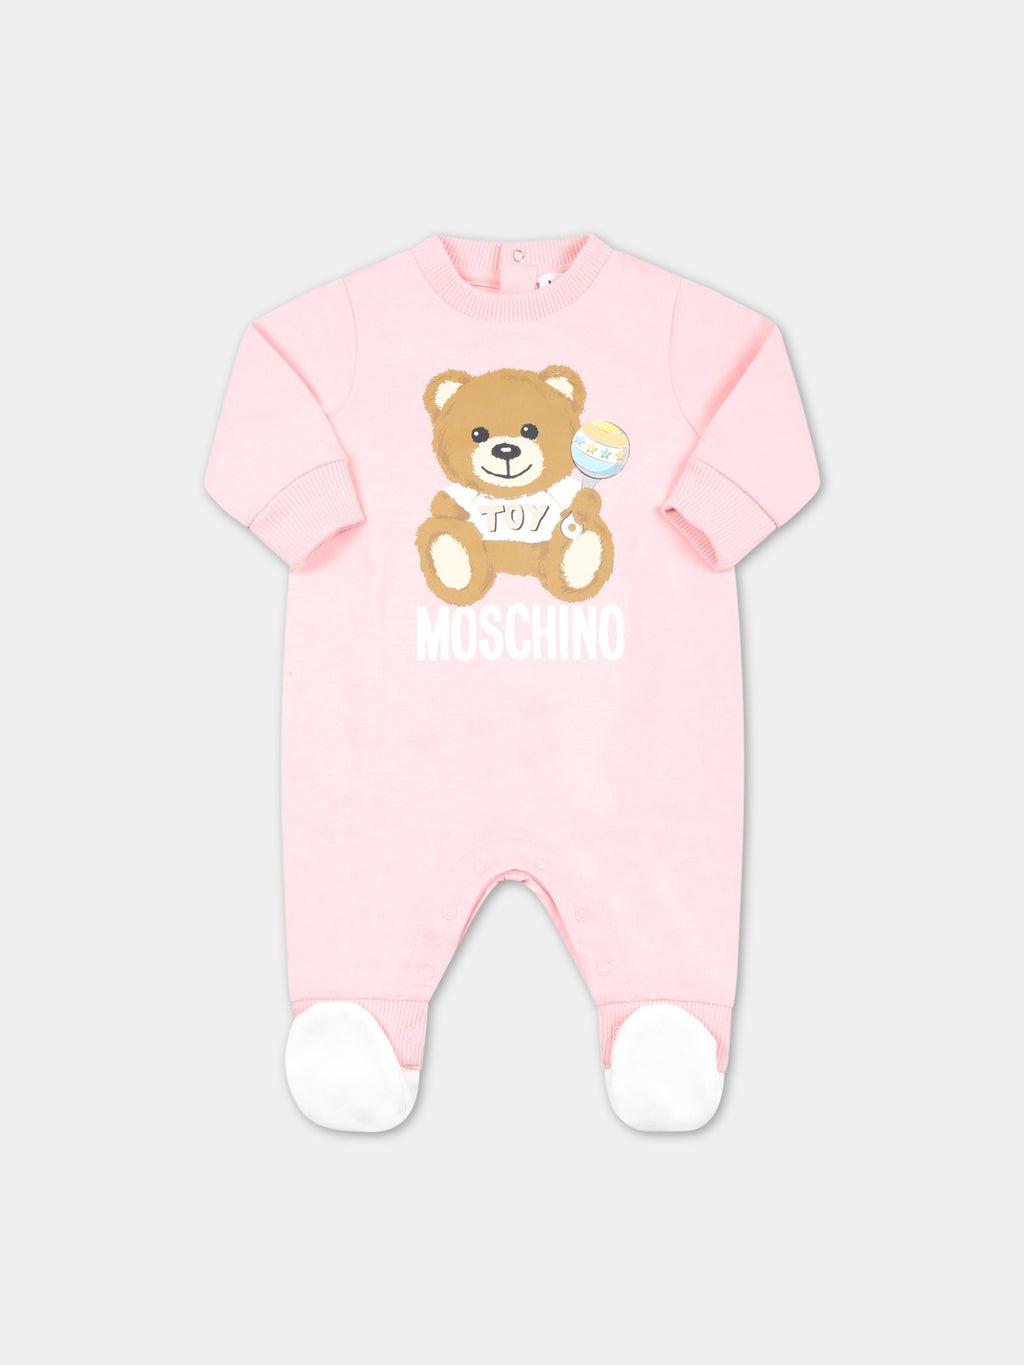 Combinaison rose pour bébé fille avec Teddy Bear